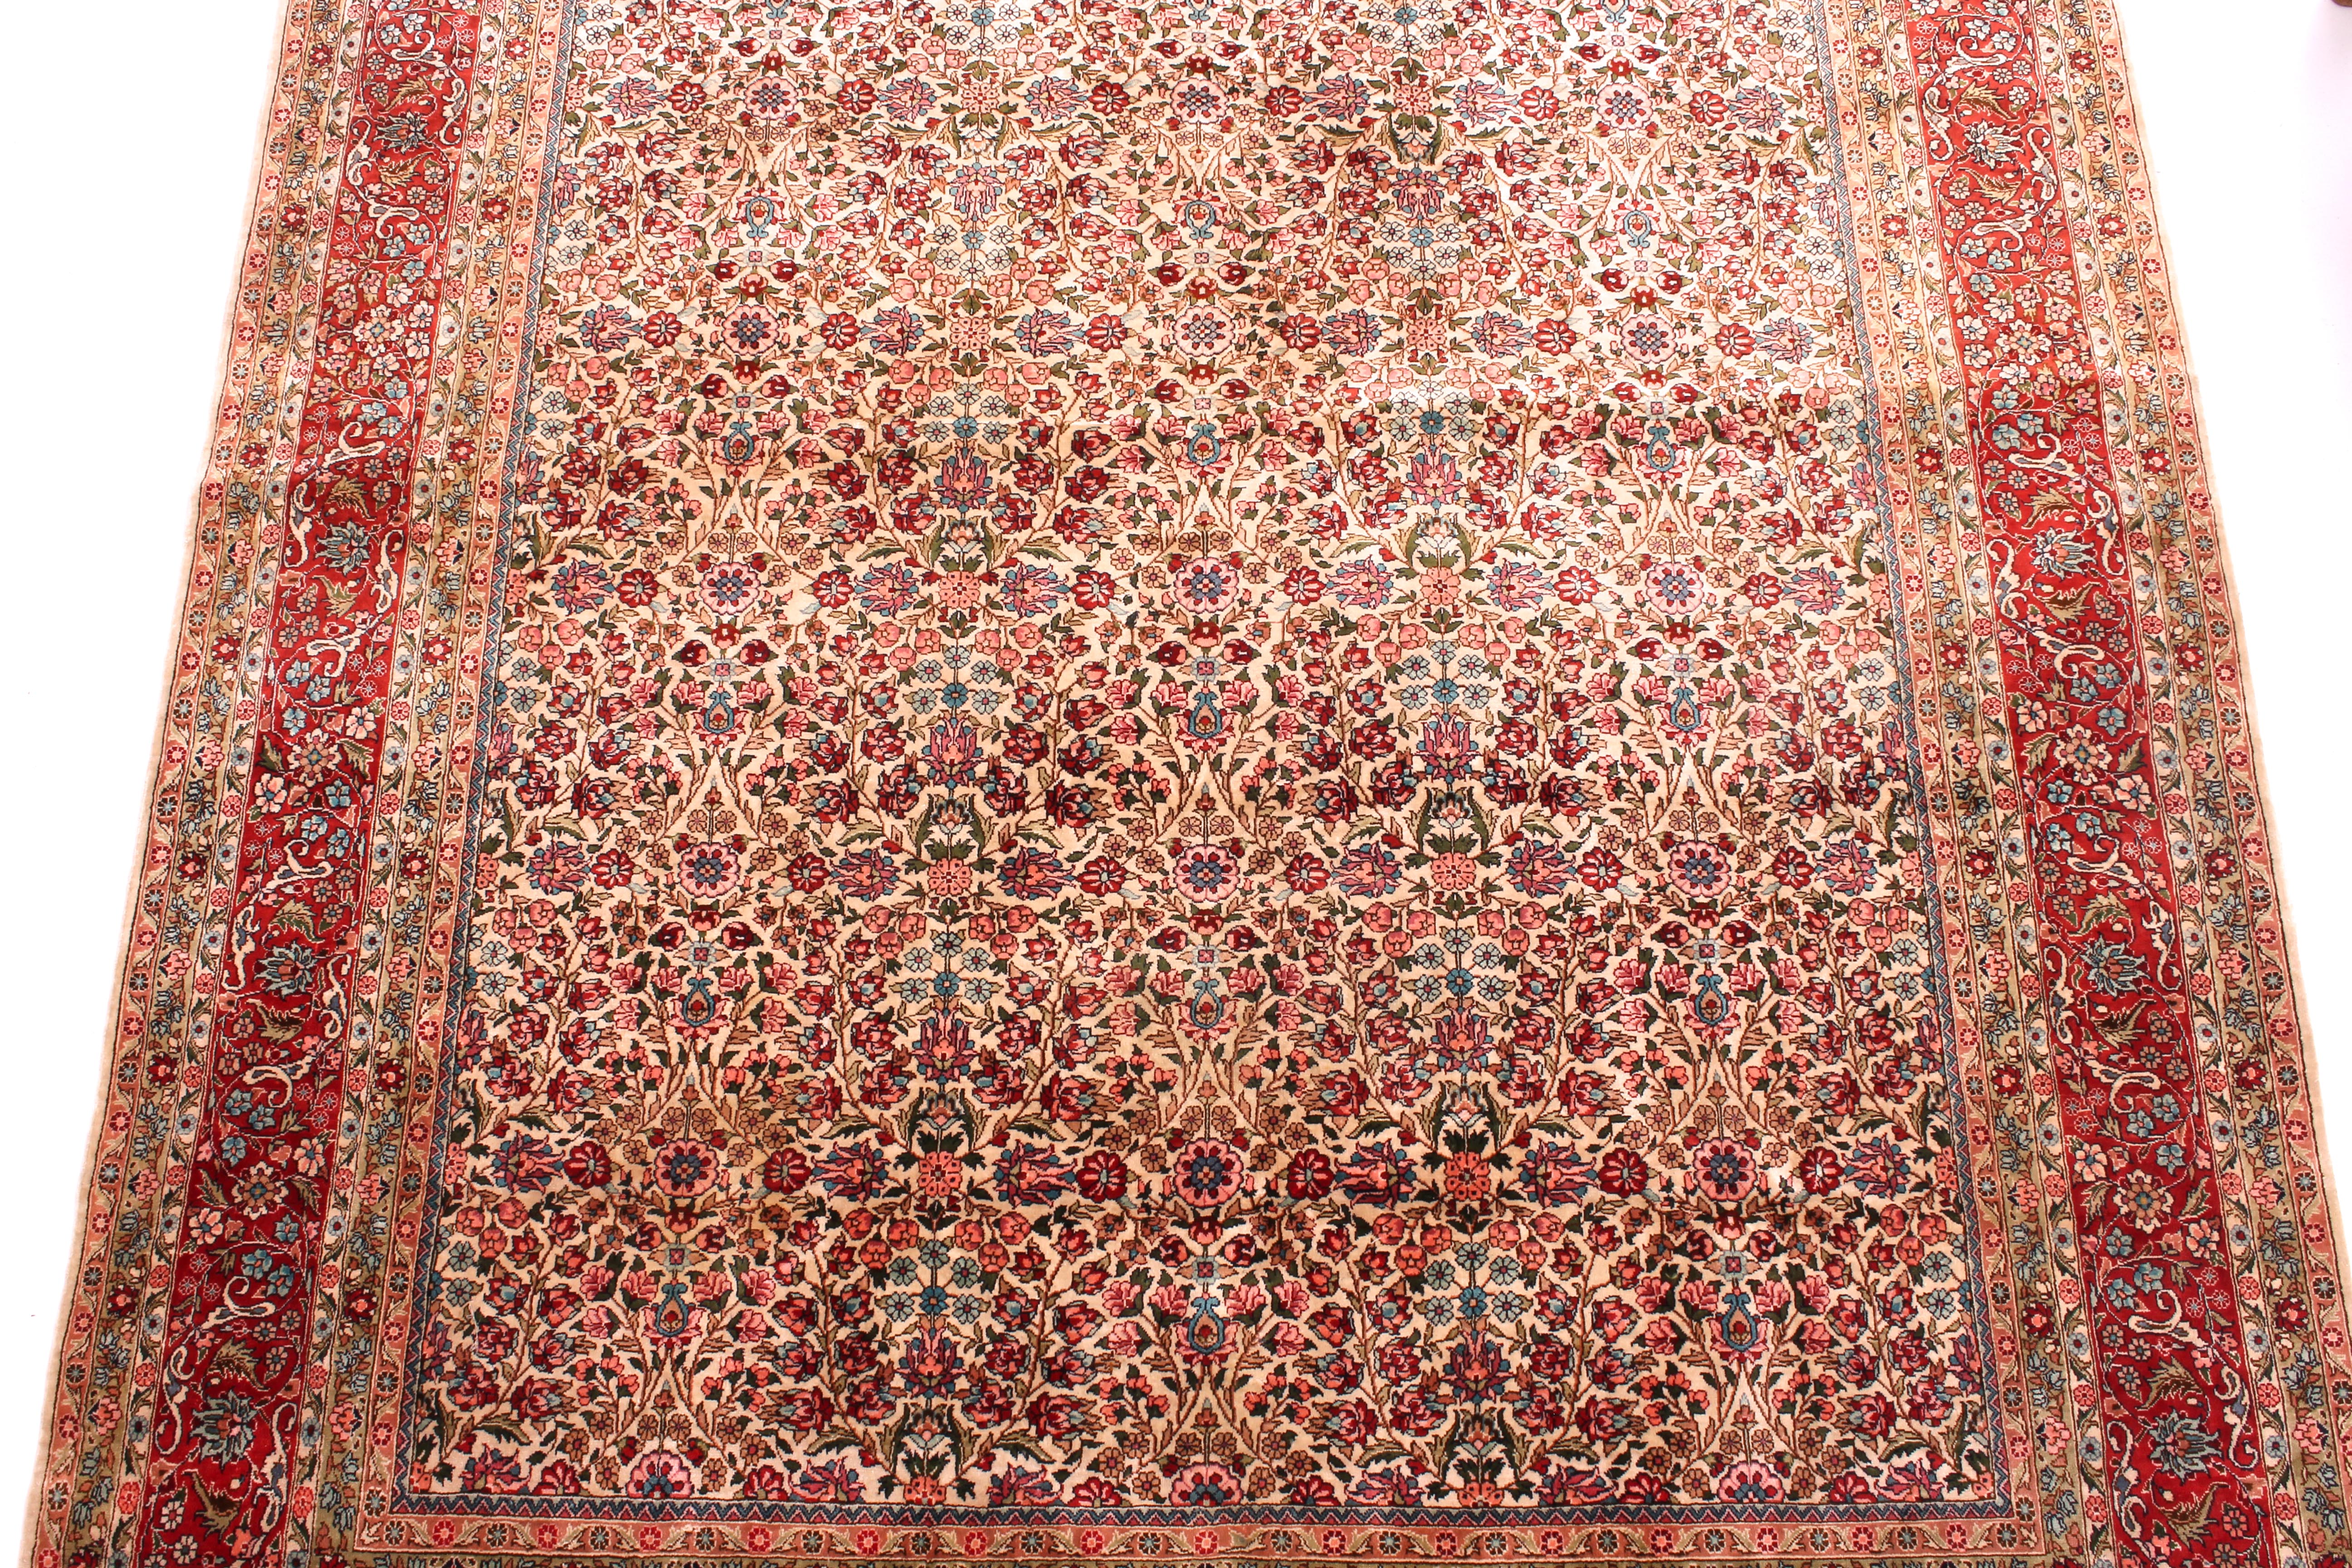 A silk rug, 208 (excluding fringe) x 139 cm - Image 2 of 6